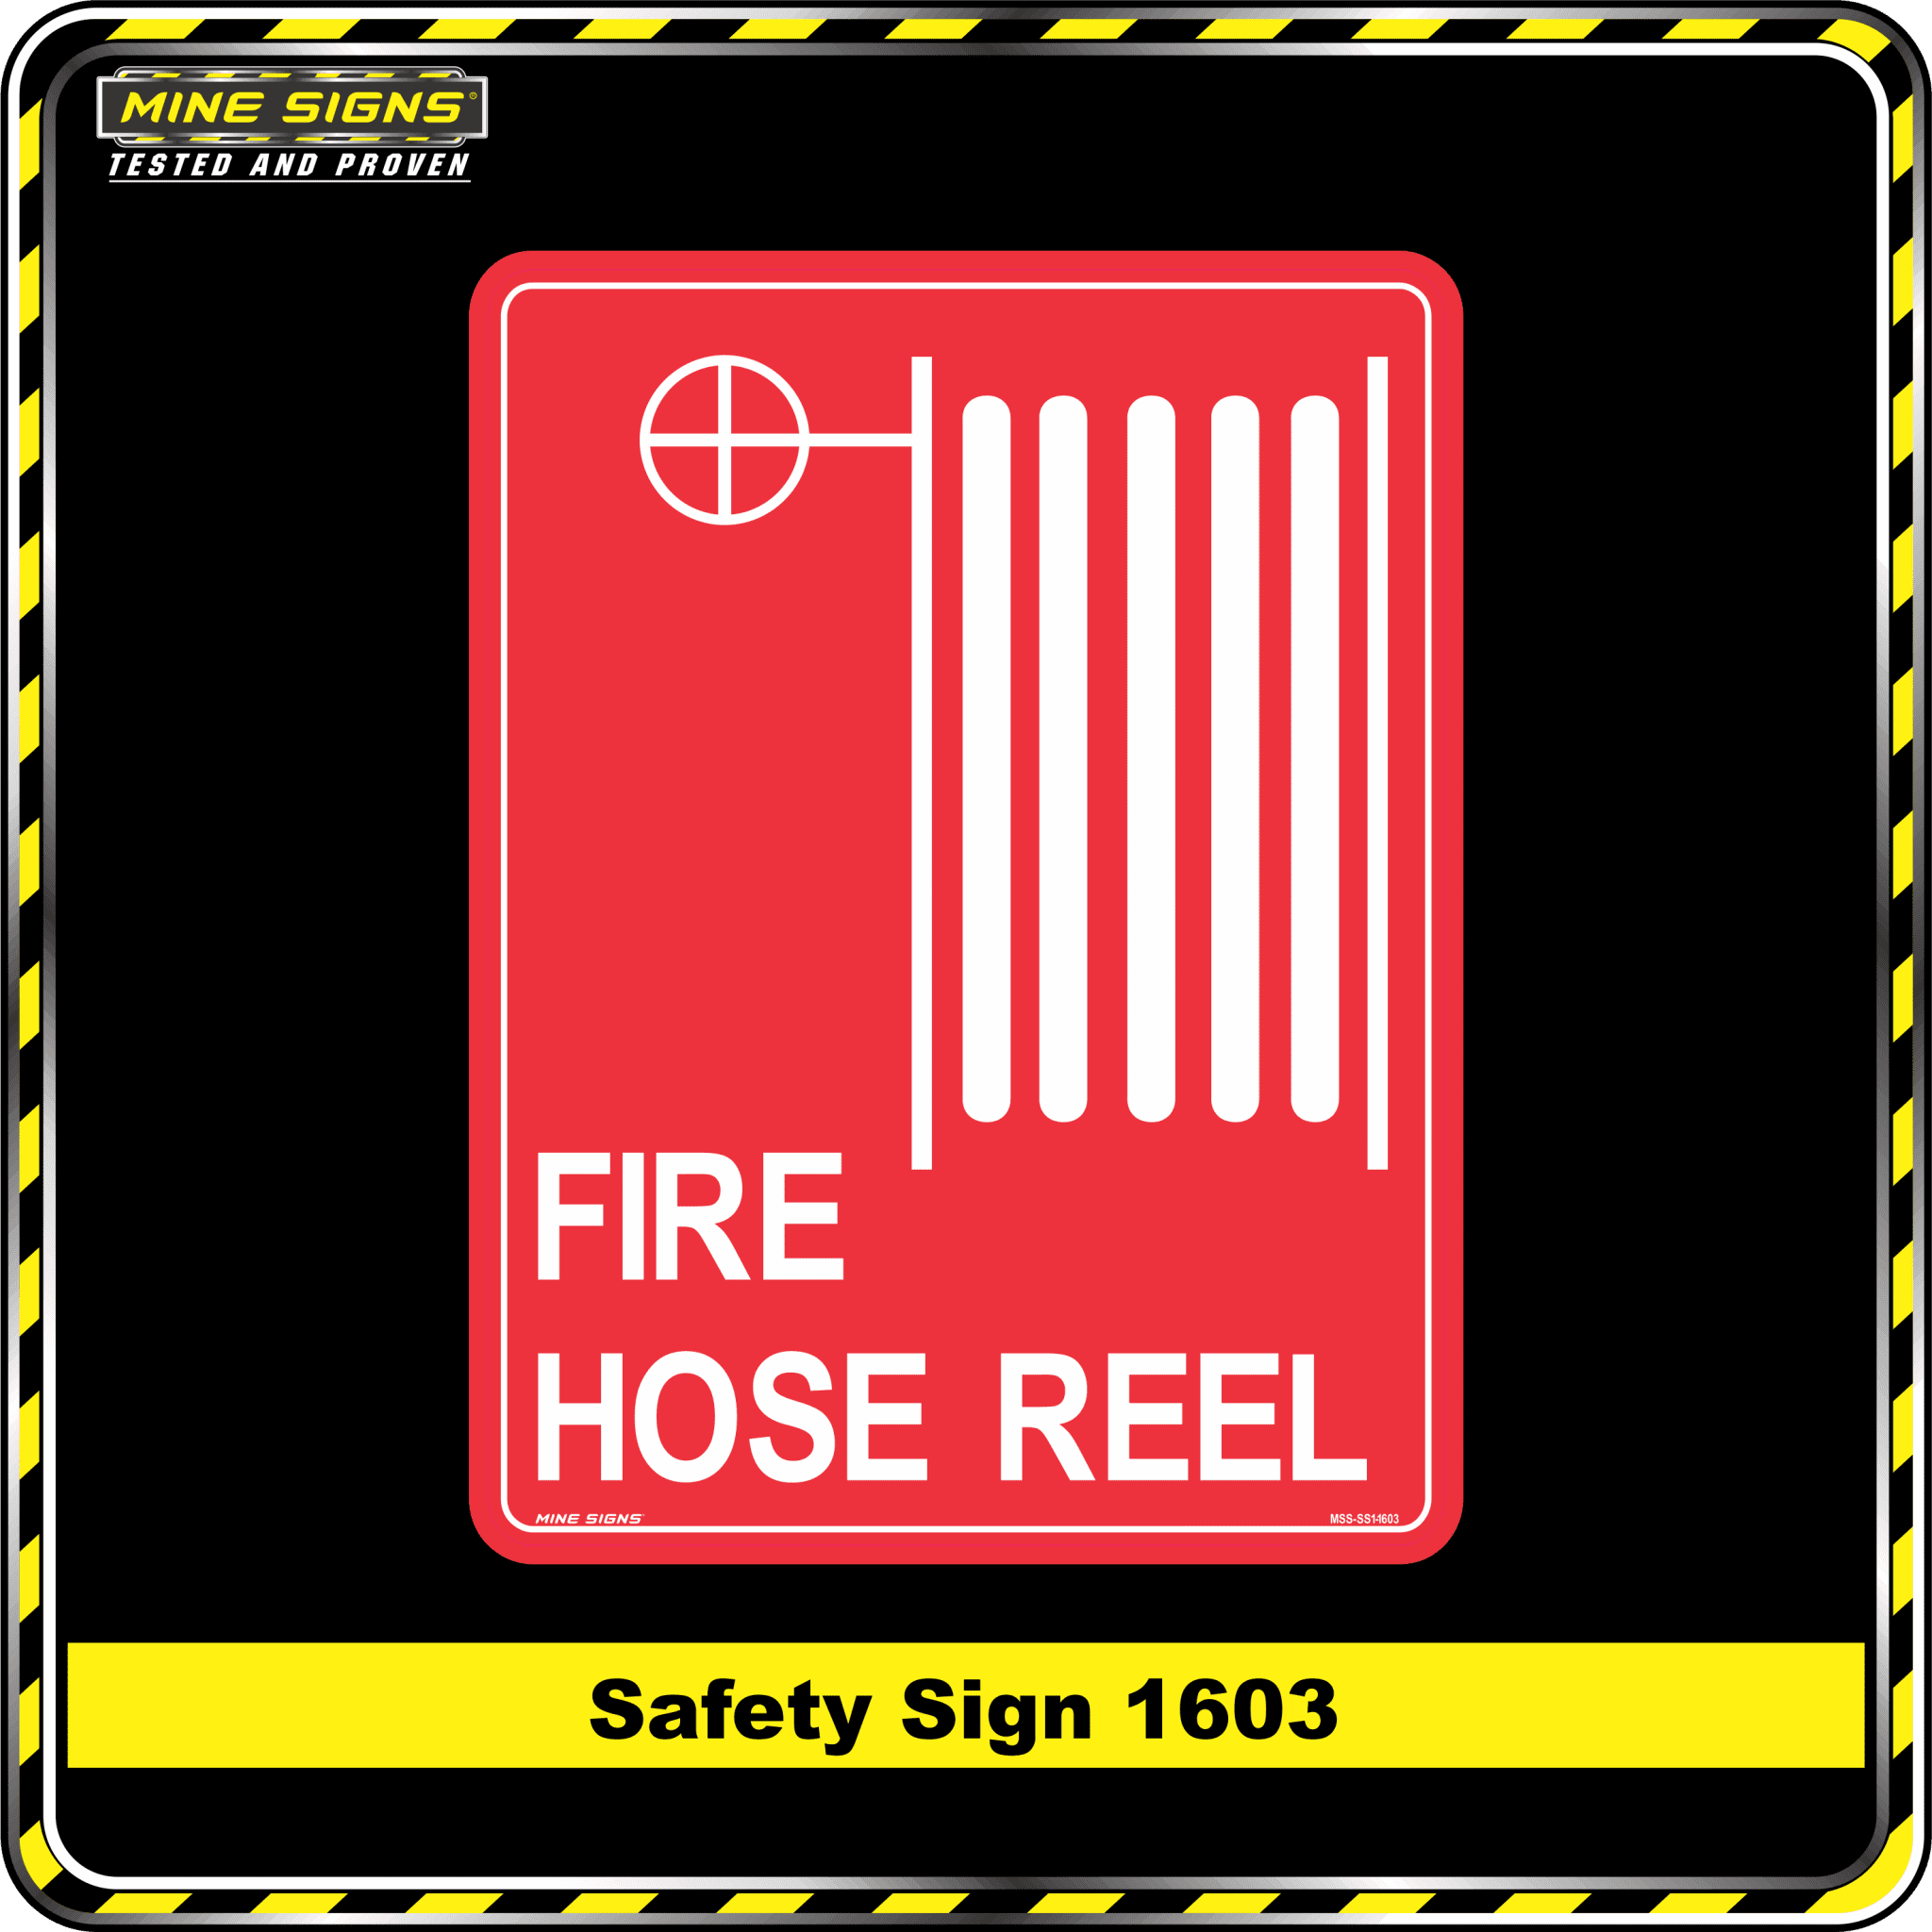 Fire Hose Reel (Safety Sign 1603)